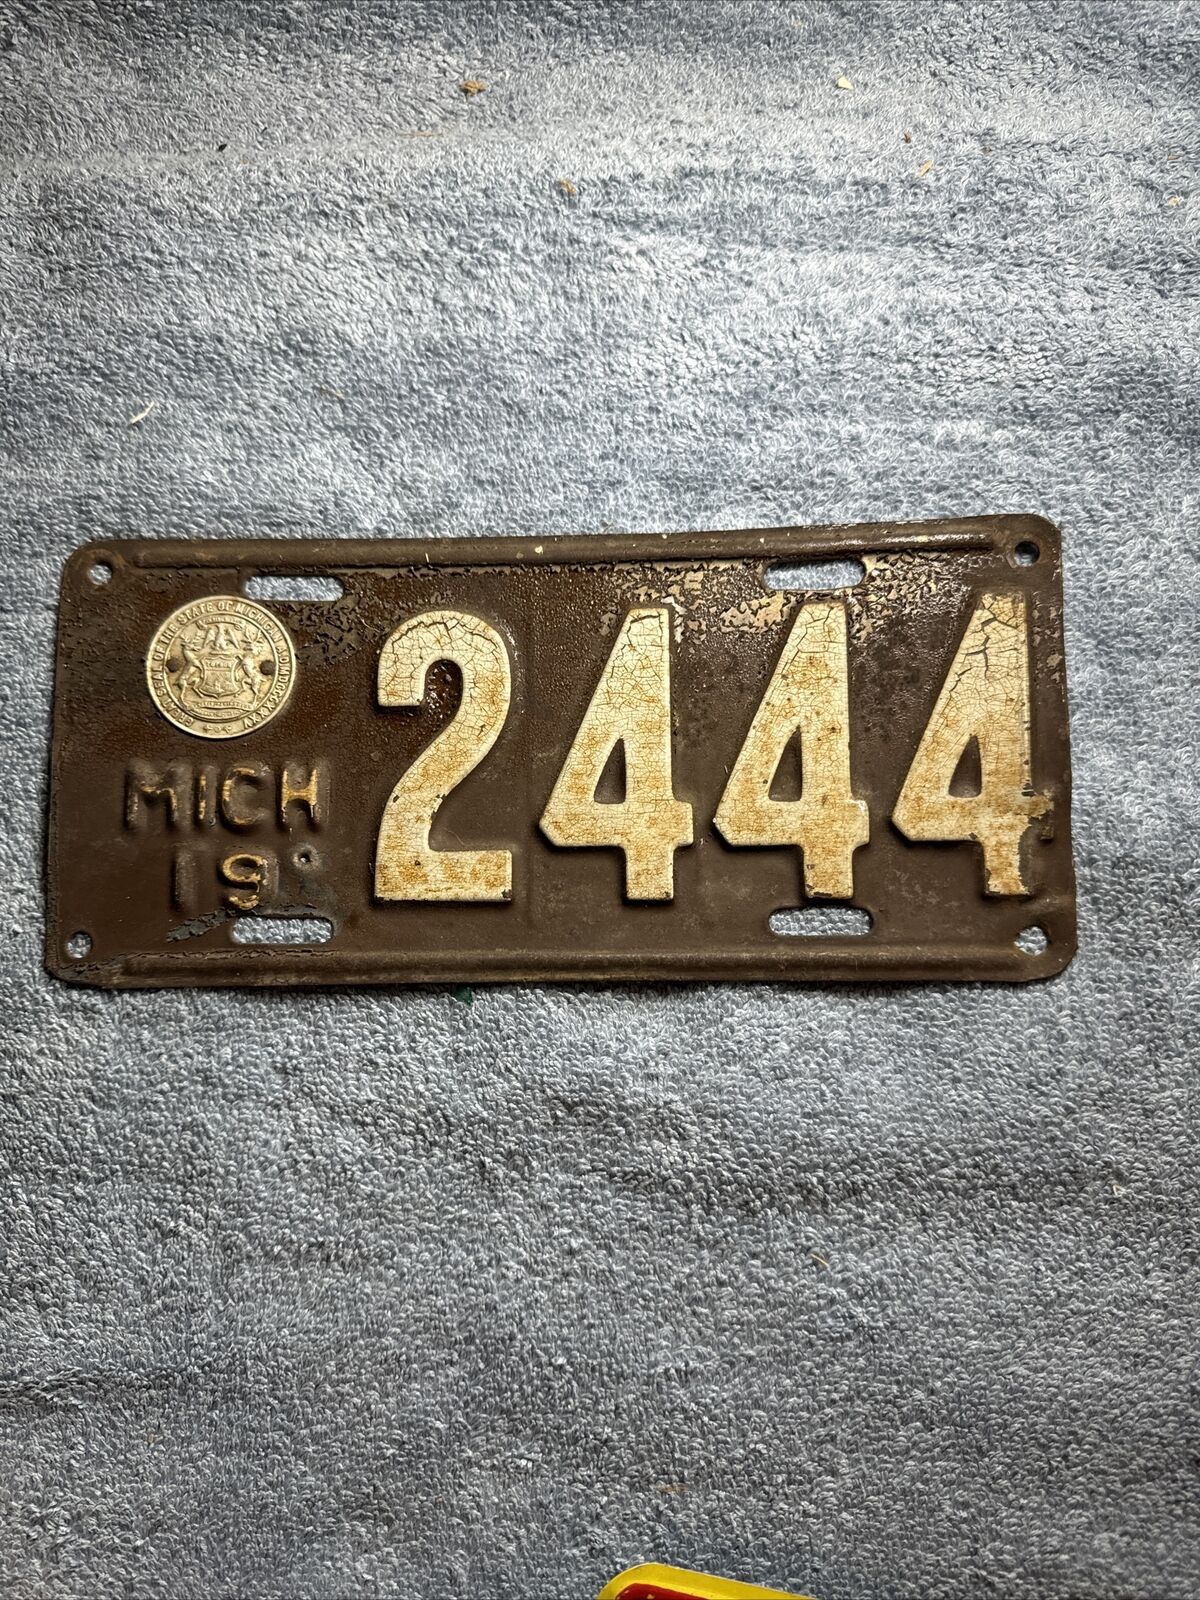 1919 Michigan License Plate 2444